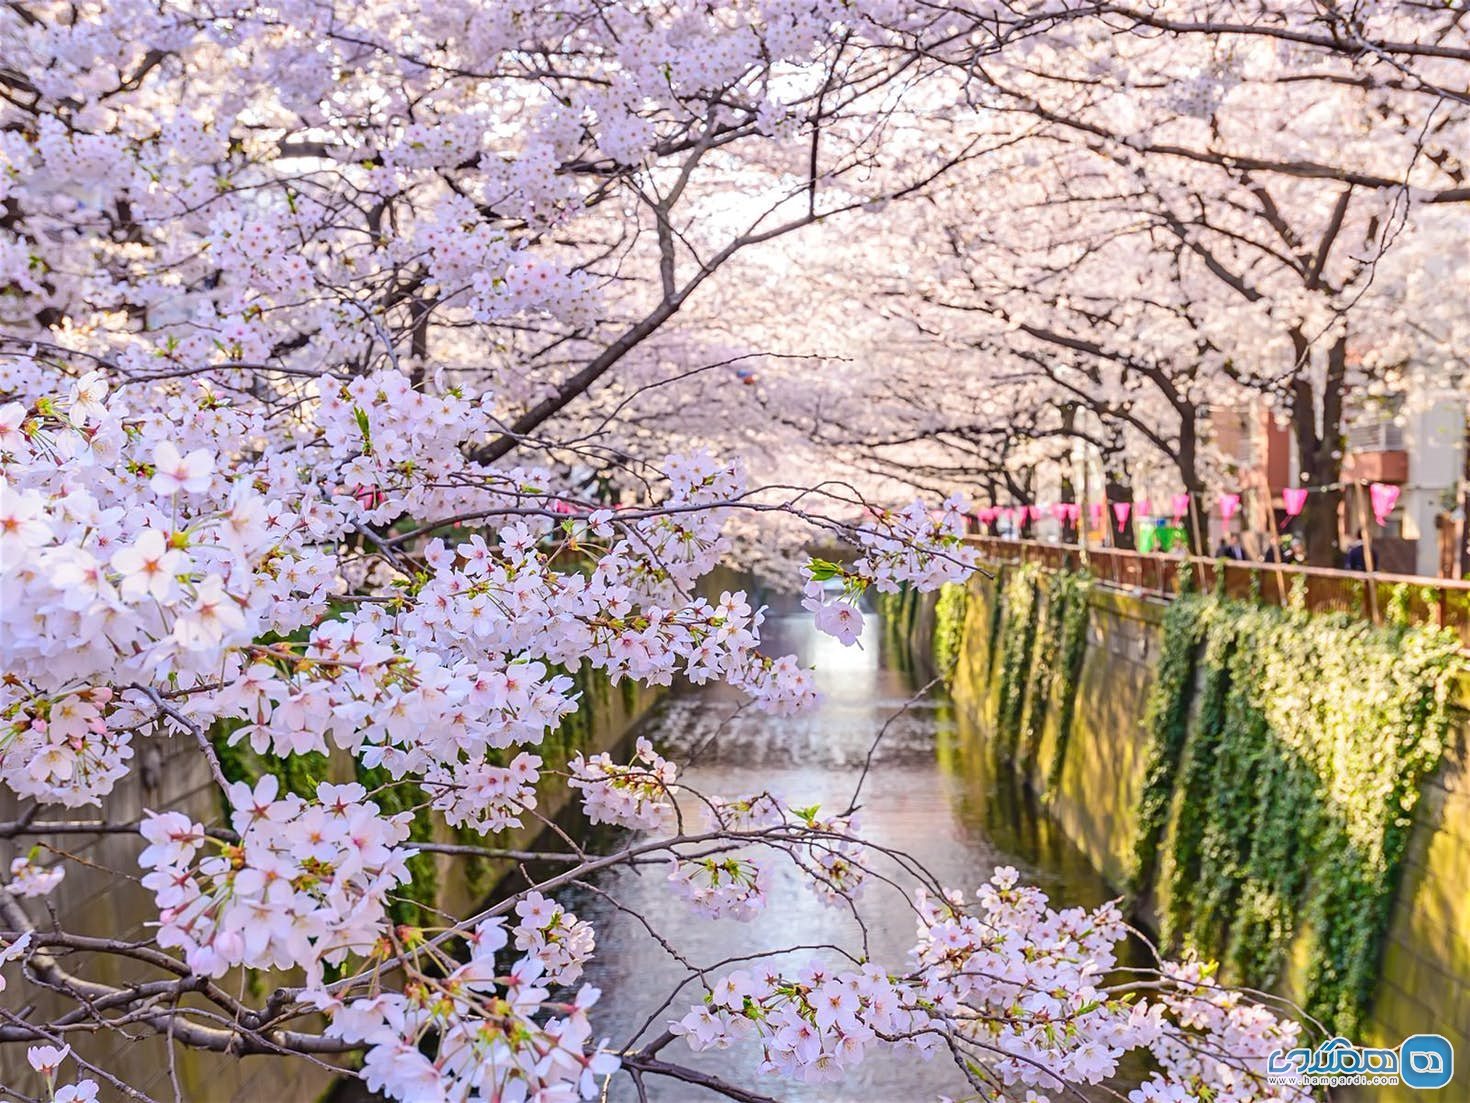 زمان و مکان مناسب برای تماشای شکوفه های گیلاس در بهار